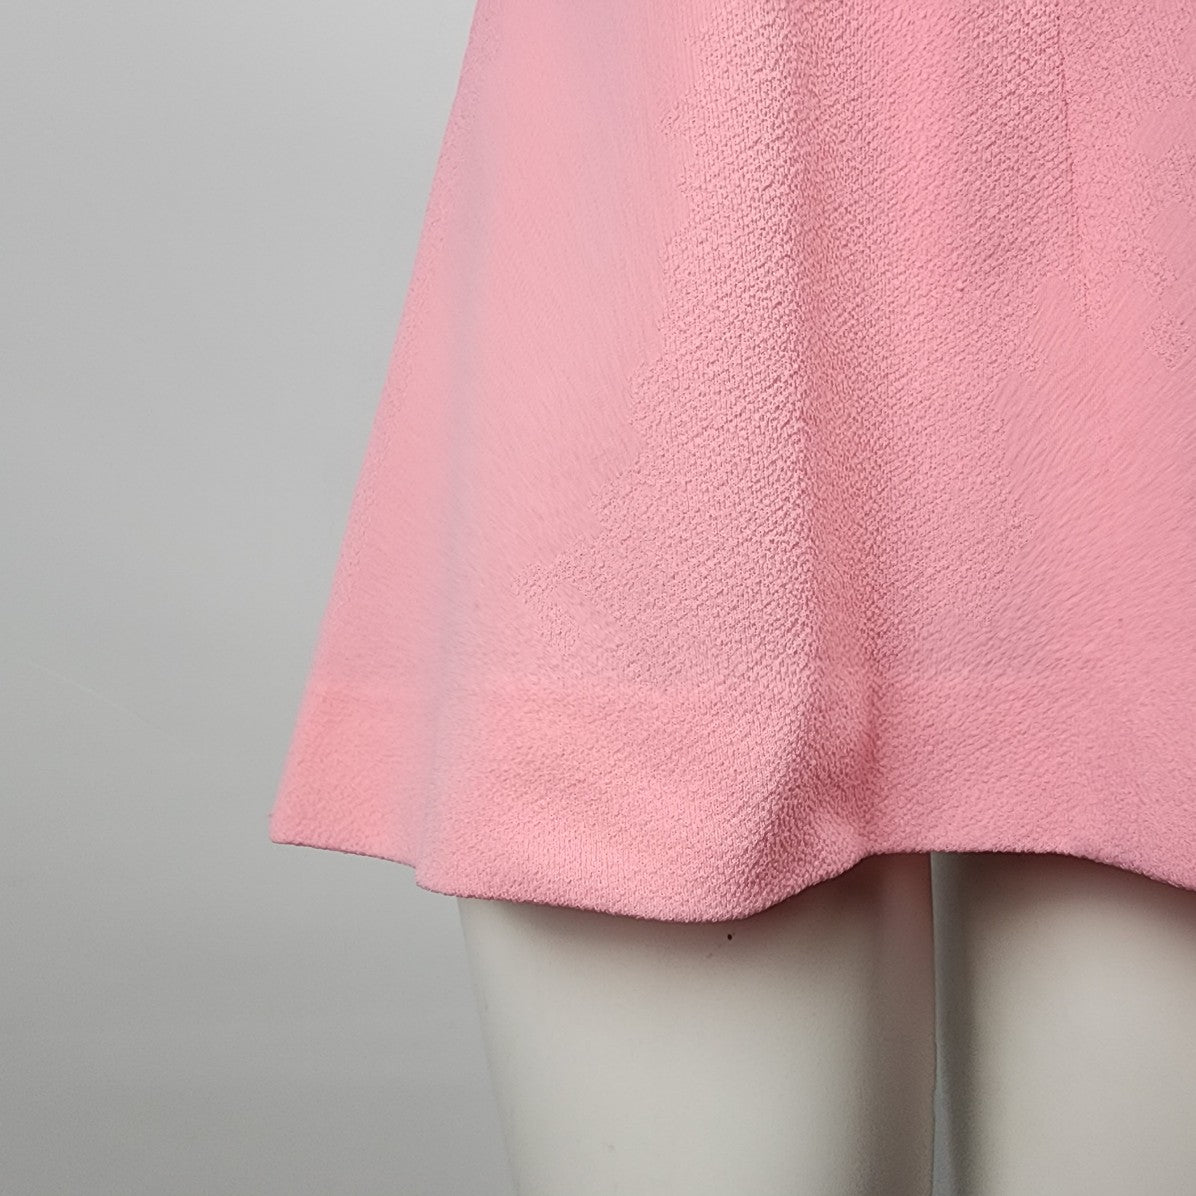 Hollinsworth Junior Miss Pink Tunic Top Mini Dress Size S